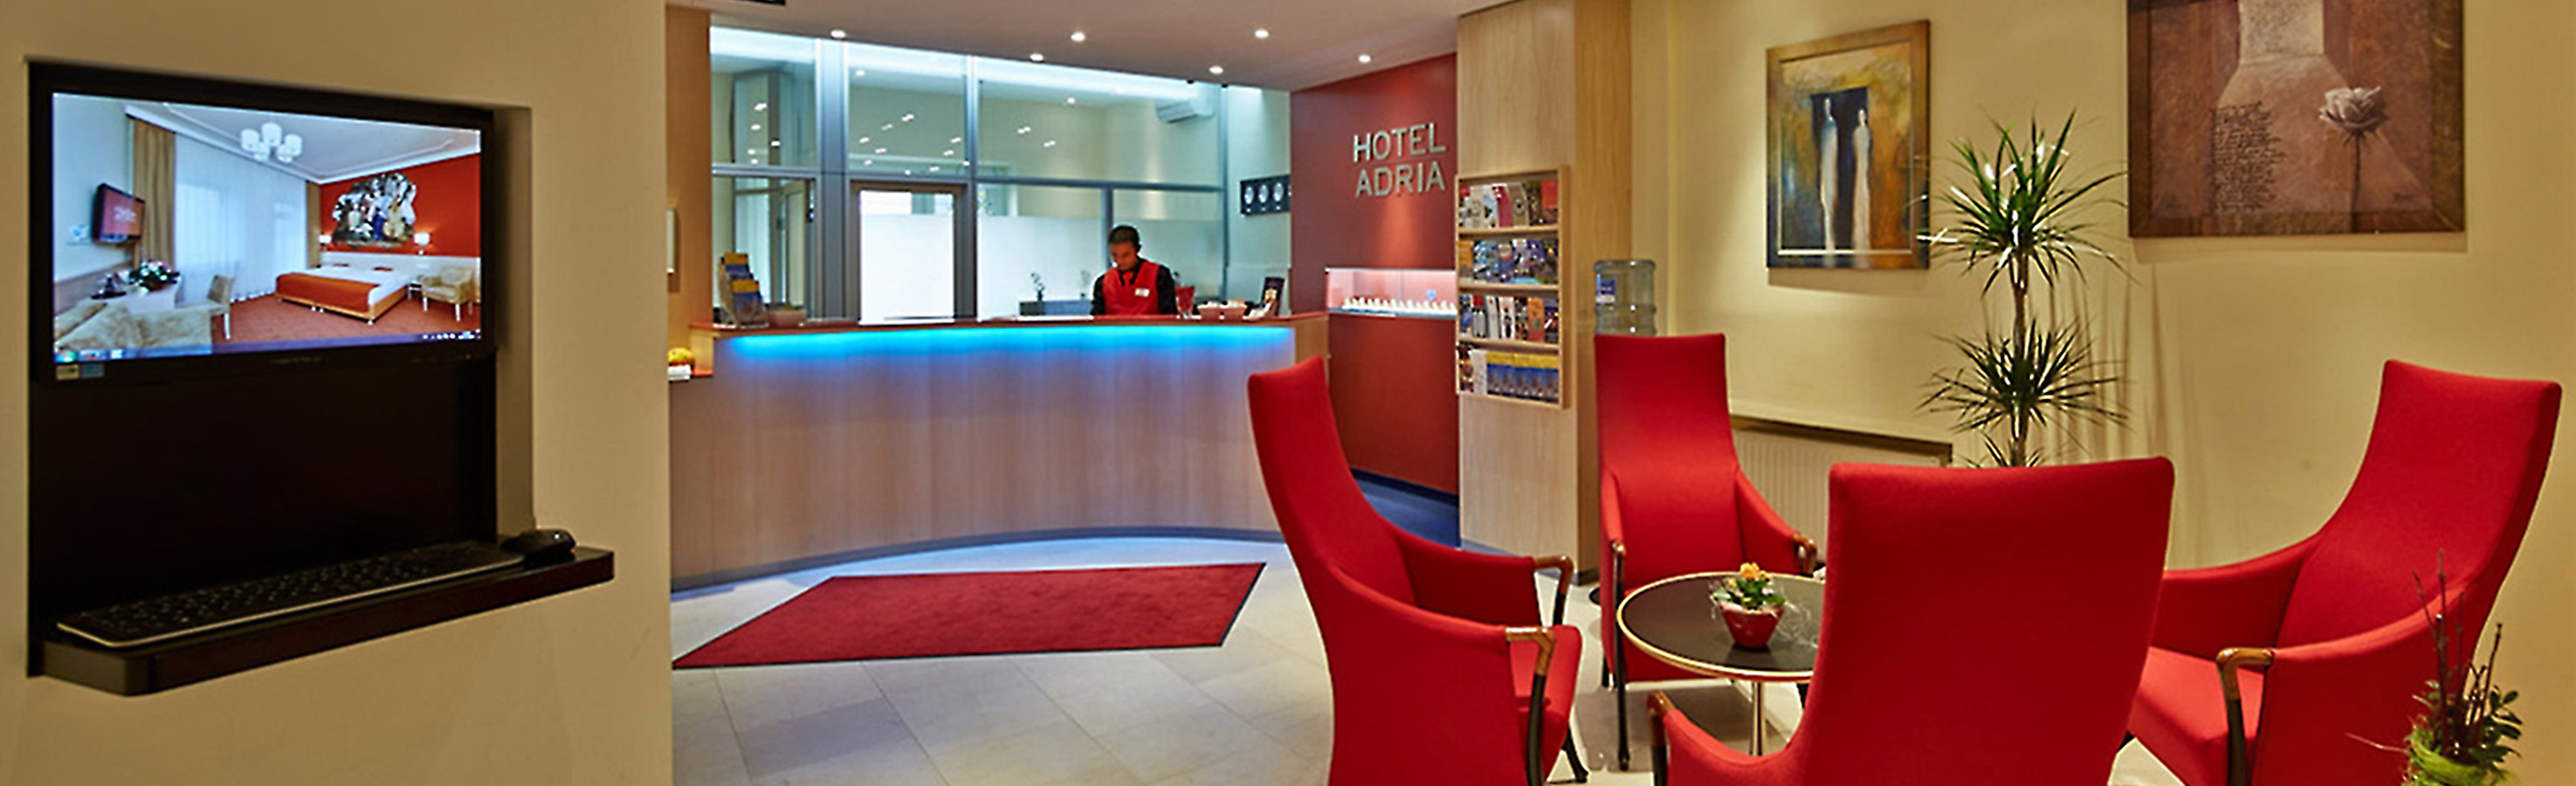 Hotelbeschreibung und Hotelinformationen im Überblick für das Hotel ADRIA in München Lehel